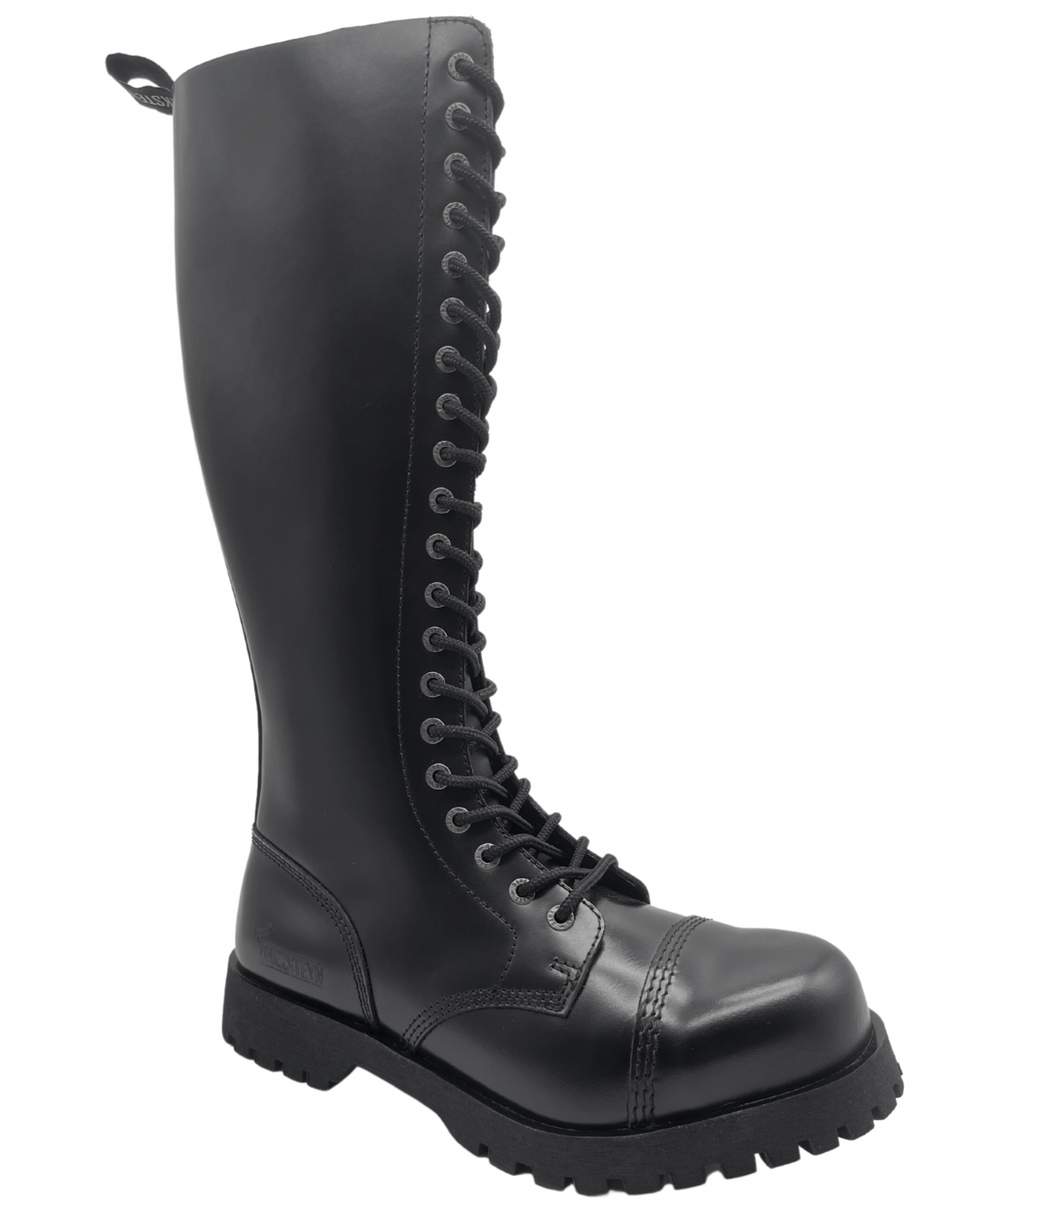 Darksteyn Schuhe 20 Eye Ranger Premium Boots Black Stiefel